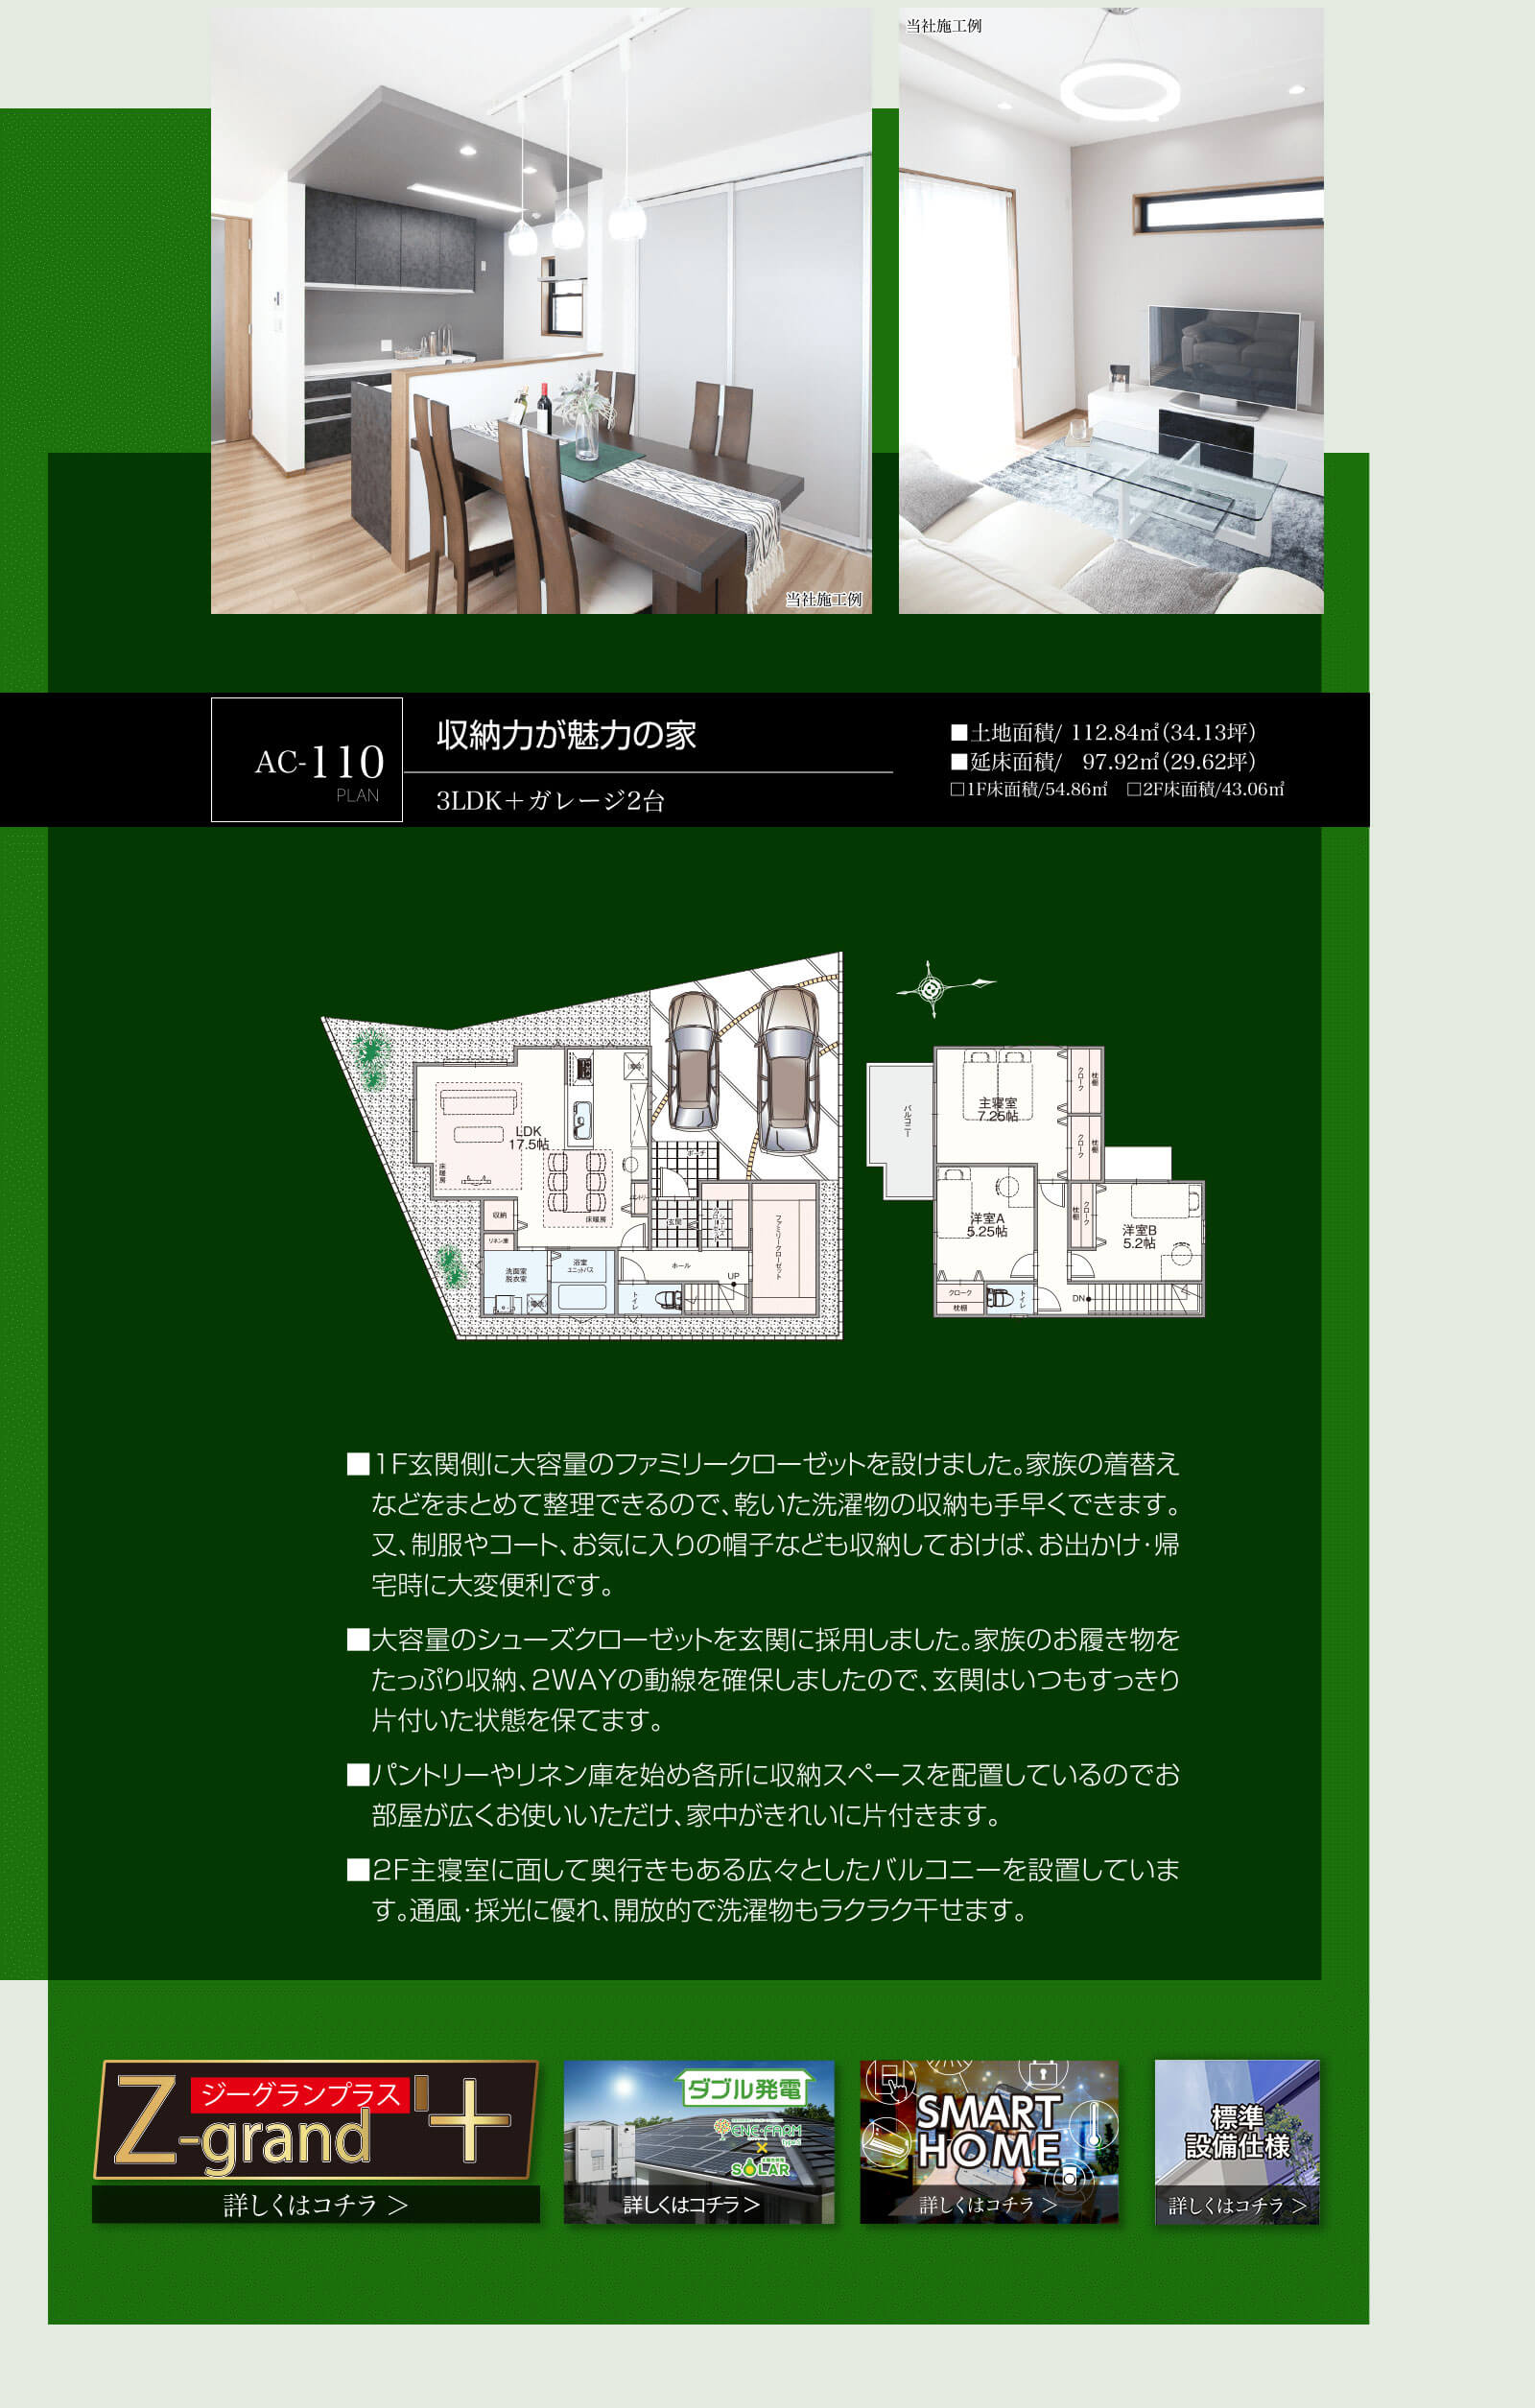 アスカーサ長尾元町AC-110収納力が魅力の家の画像